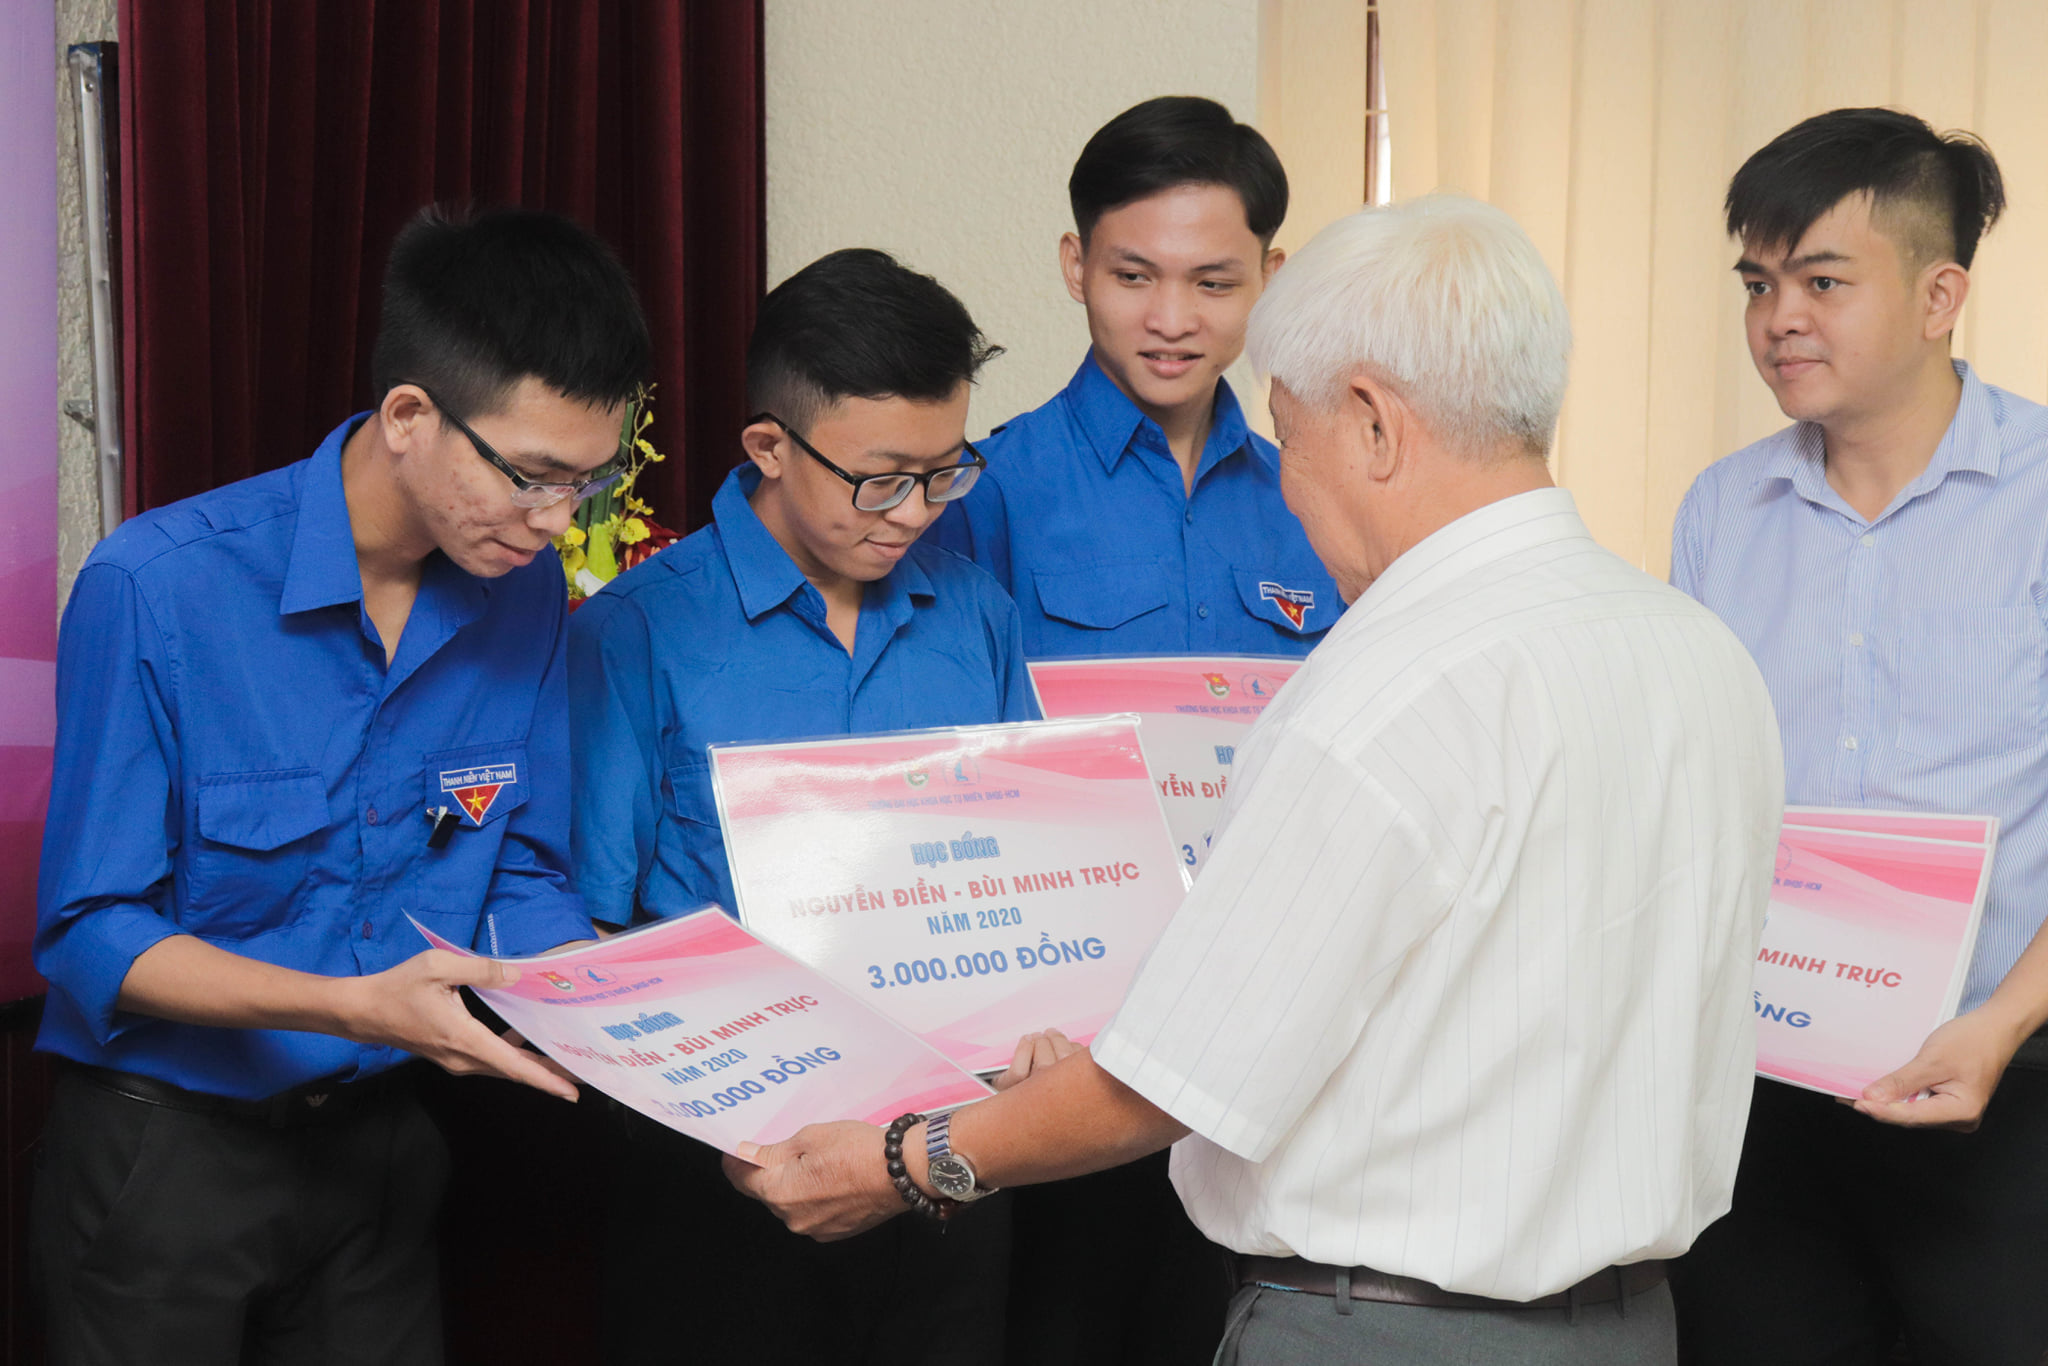 Lễ trao học bổng Nguyễn Điền – Bùi Minh Trực dành cho cán bộ Đoàn – Hội năm 2020